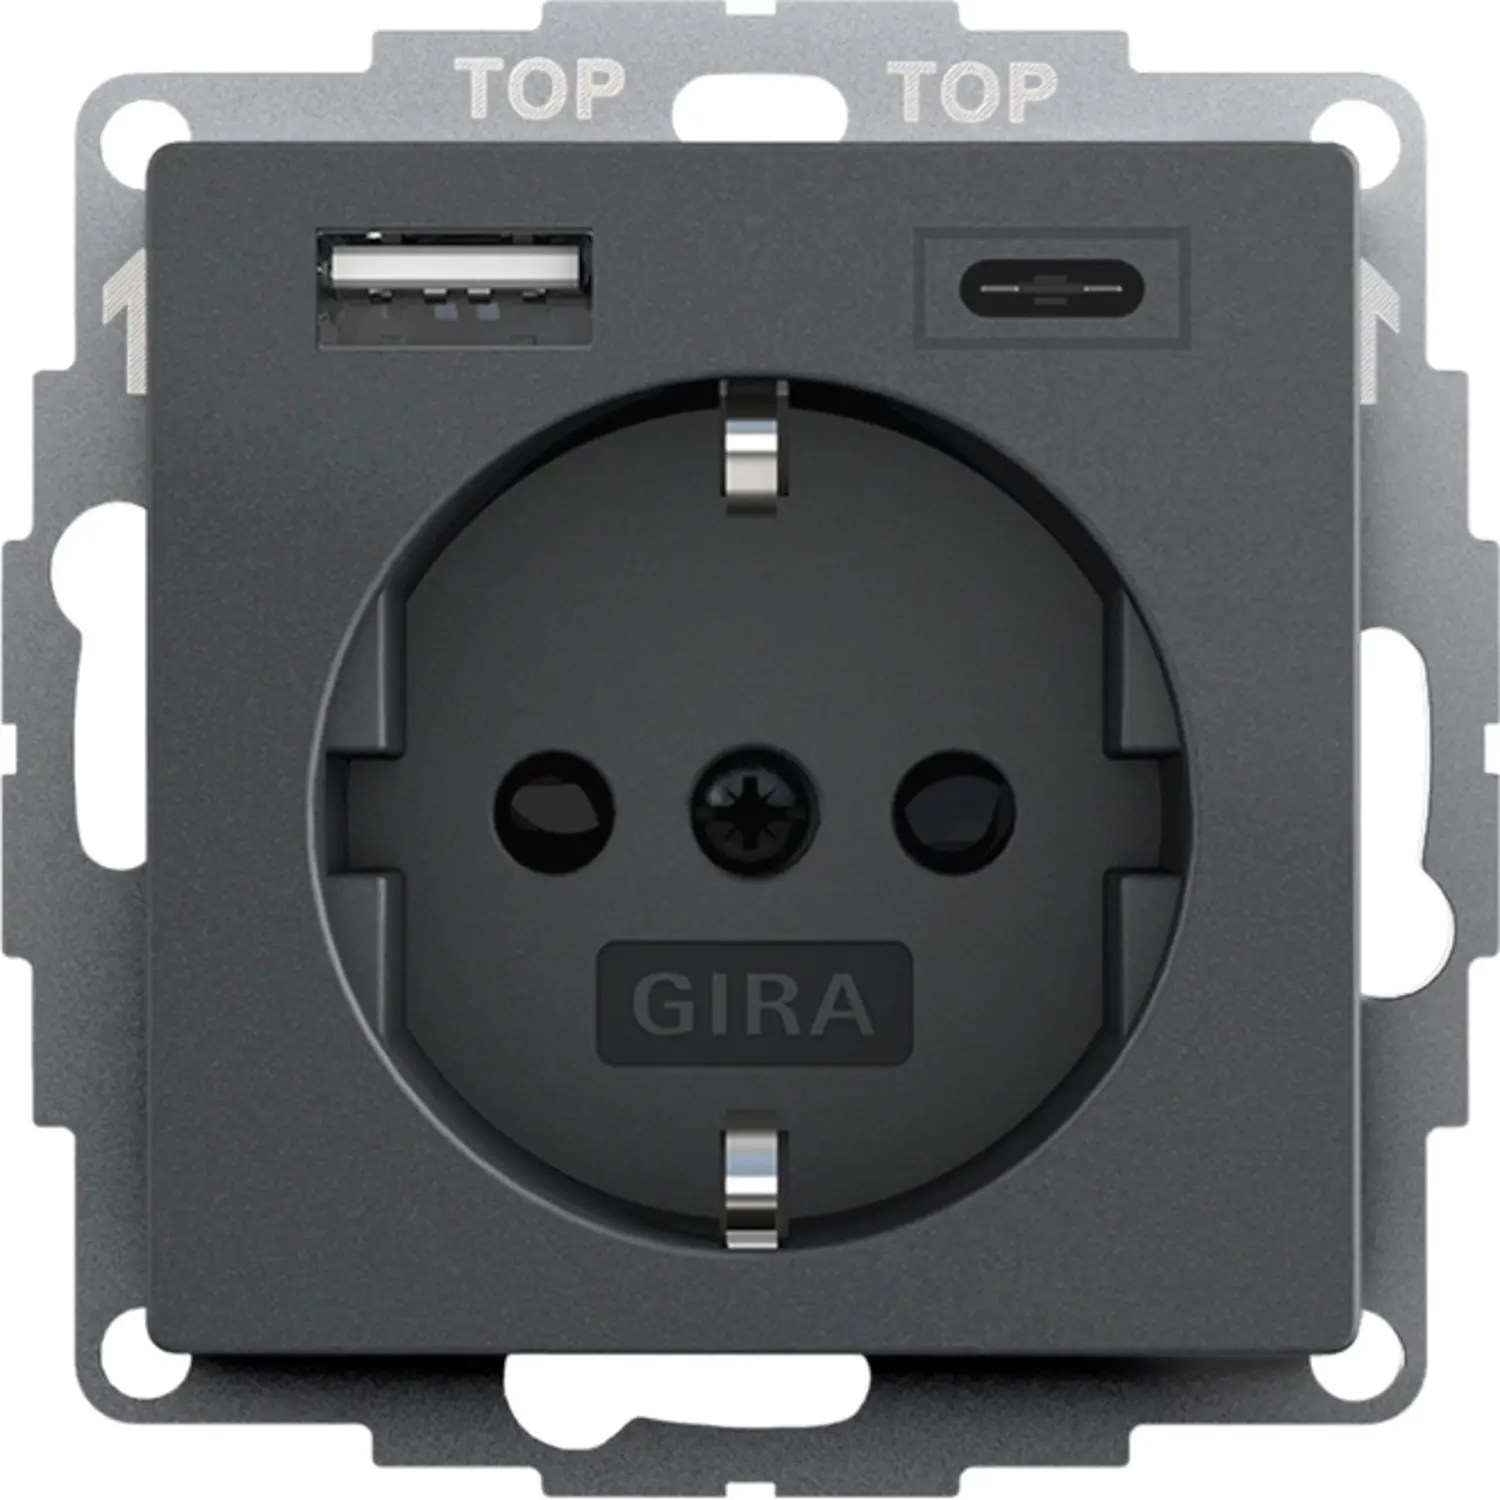 Gira Schuko-Steckdose USB-A und USB-C erhöhtem Berührungsschutz System 55  anthrazit matt - Günstigesschaltermaterial.de